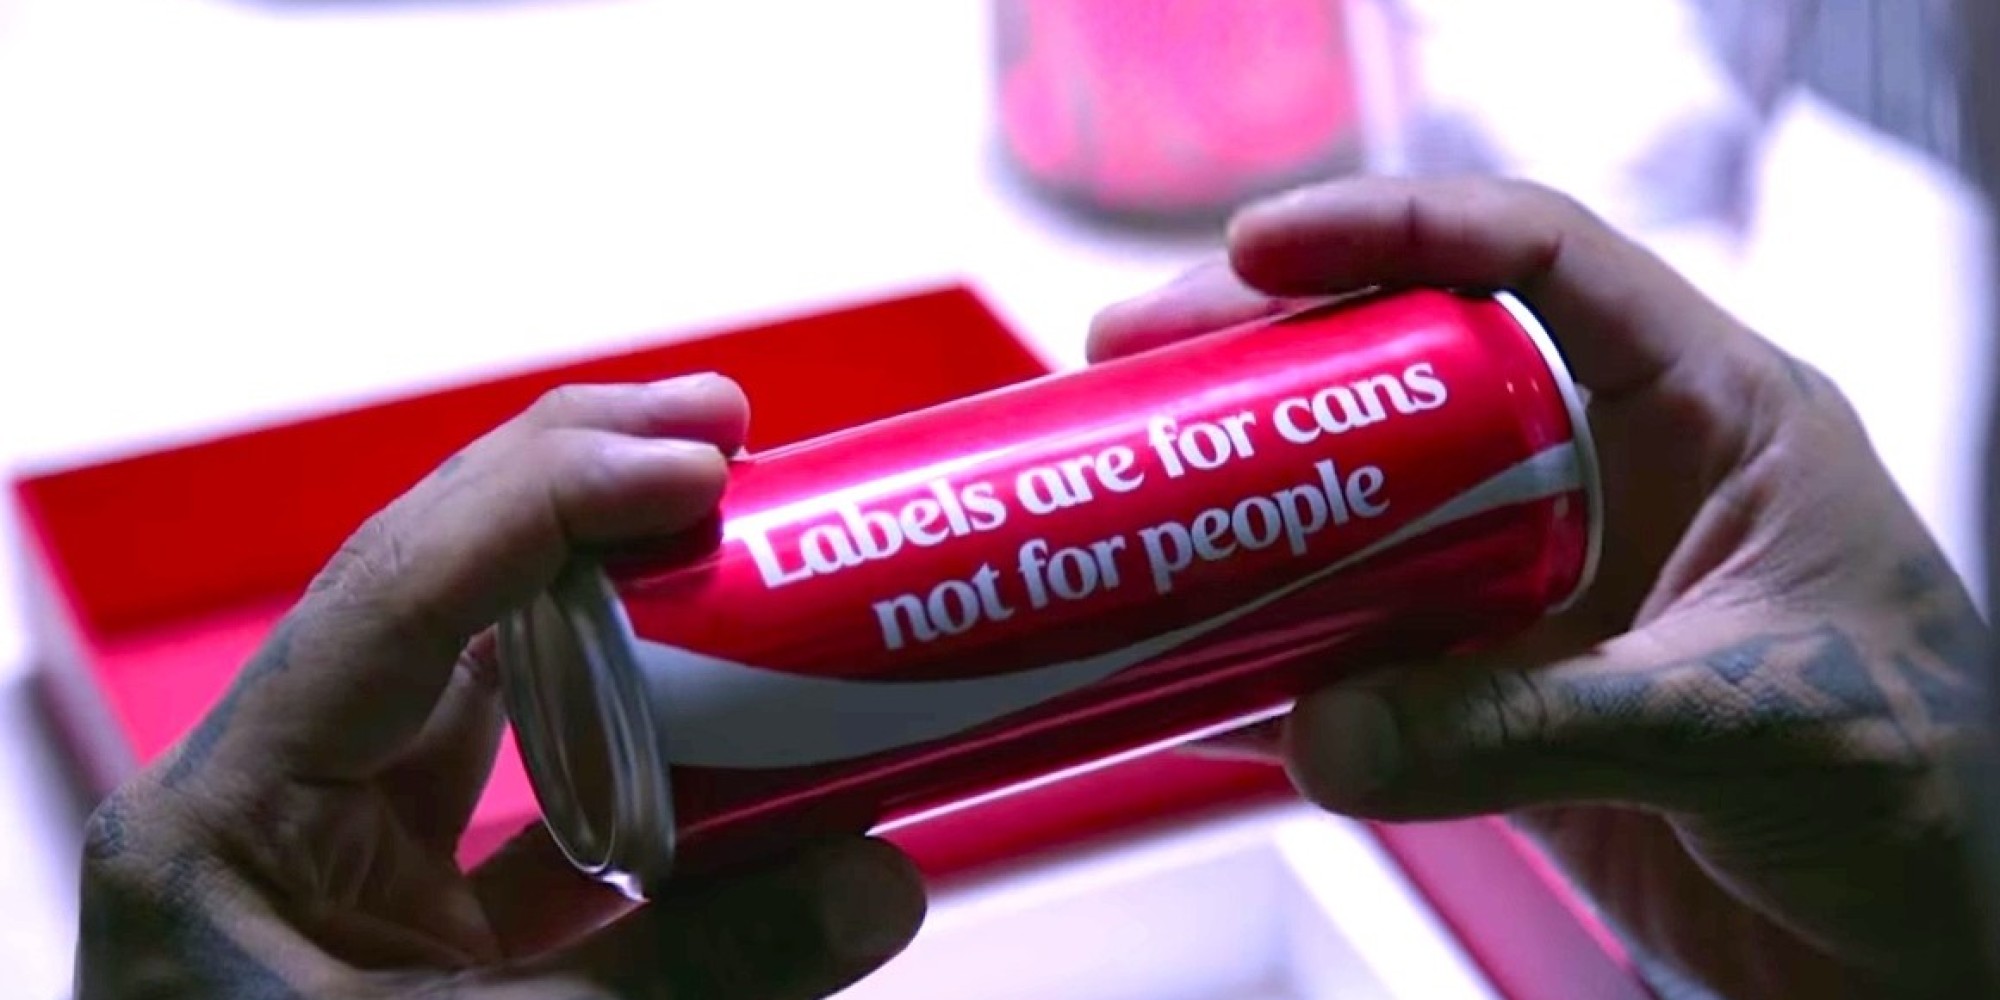 CocaCola Campaign